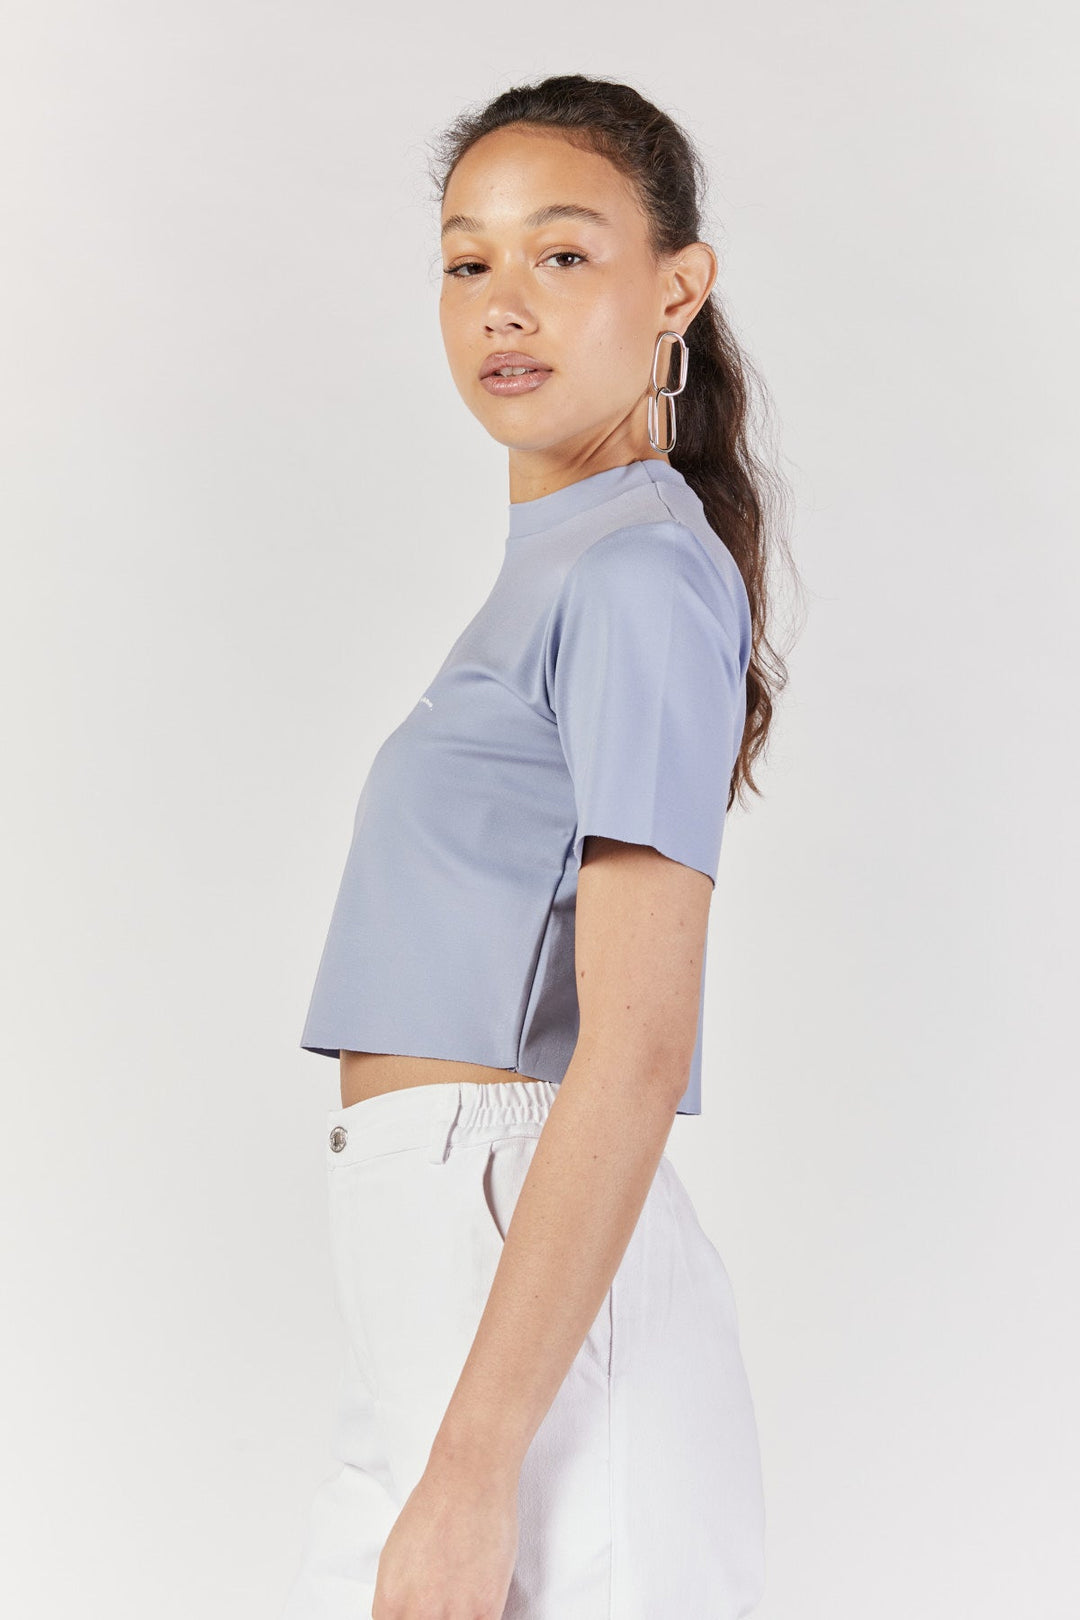 חולצת טי שרט ריבוט קרופ בצבע תכלת - Kesh Limited